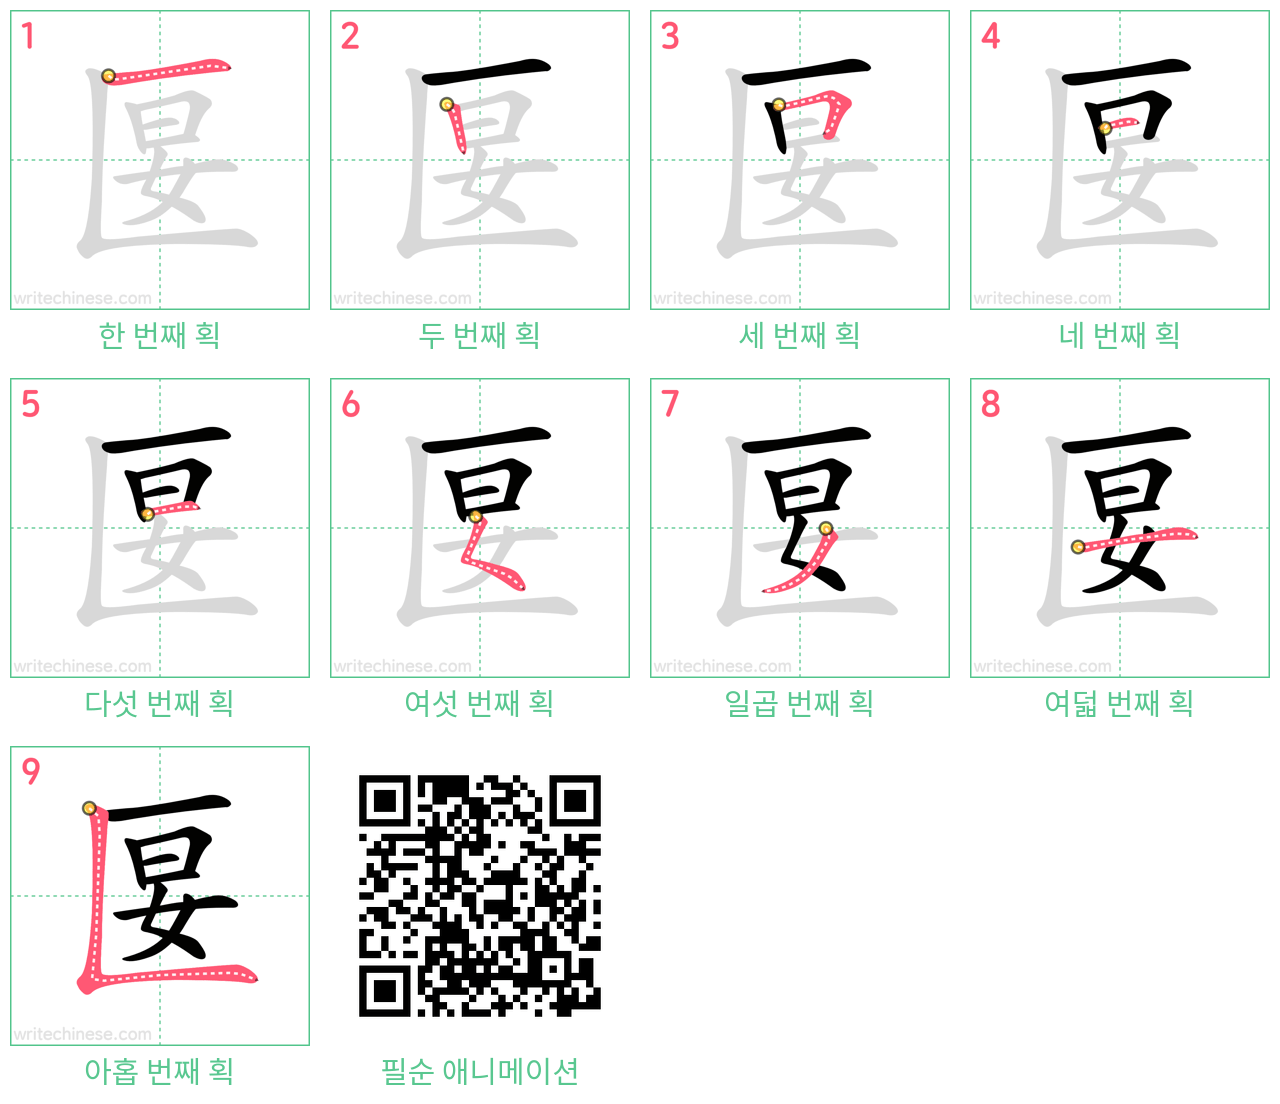 匽 step-by-step stroke order diagrams